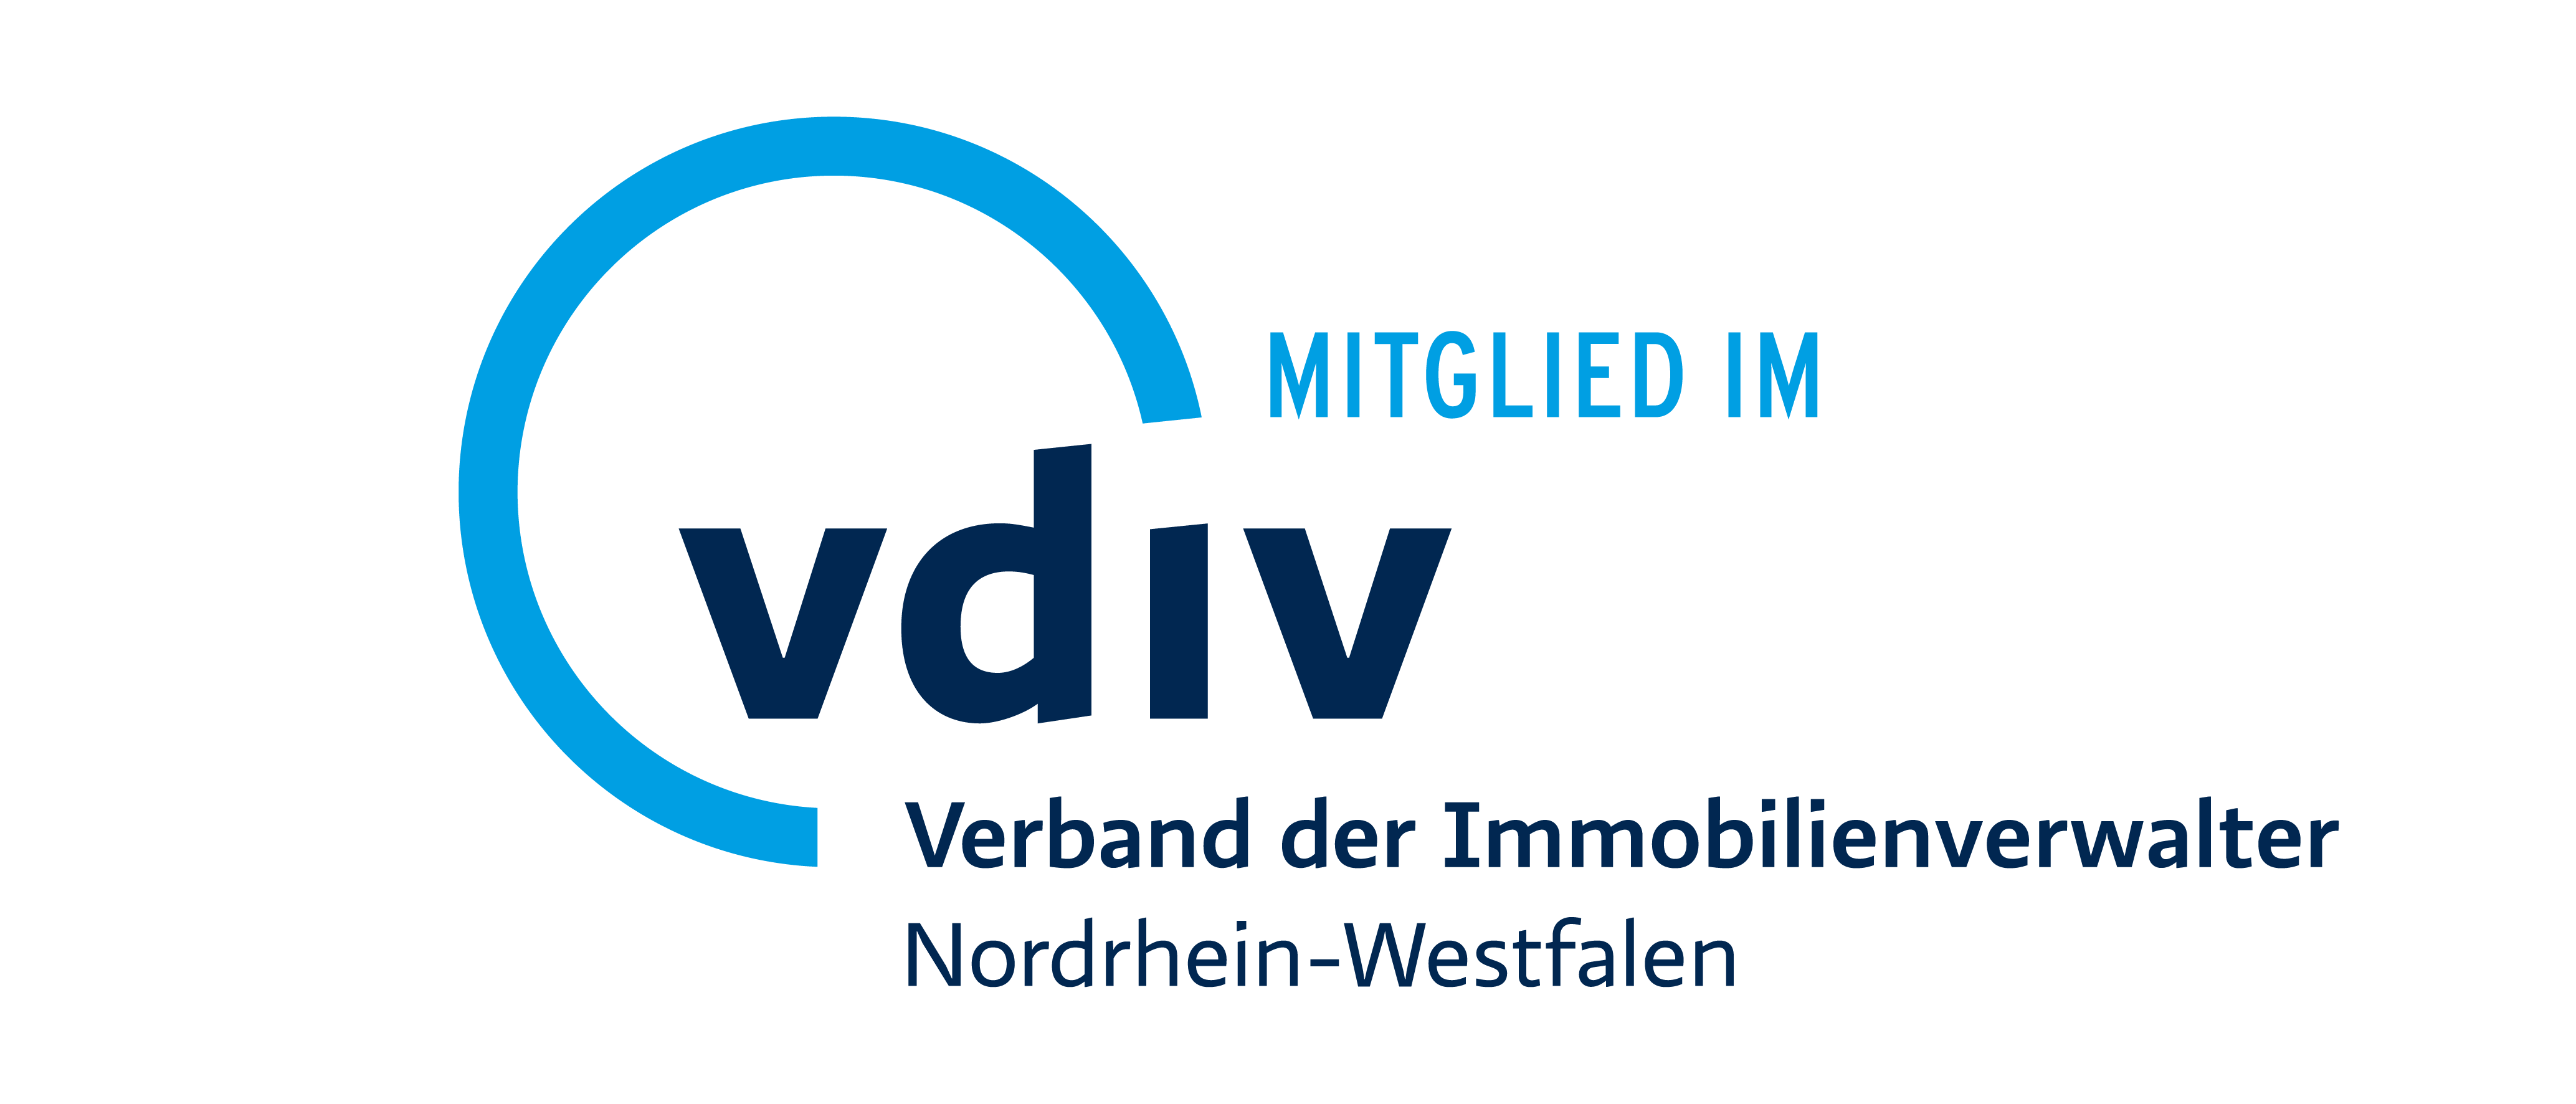 VDIV - Verband der Immbilienverwalter